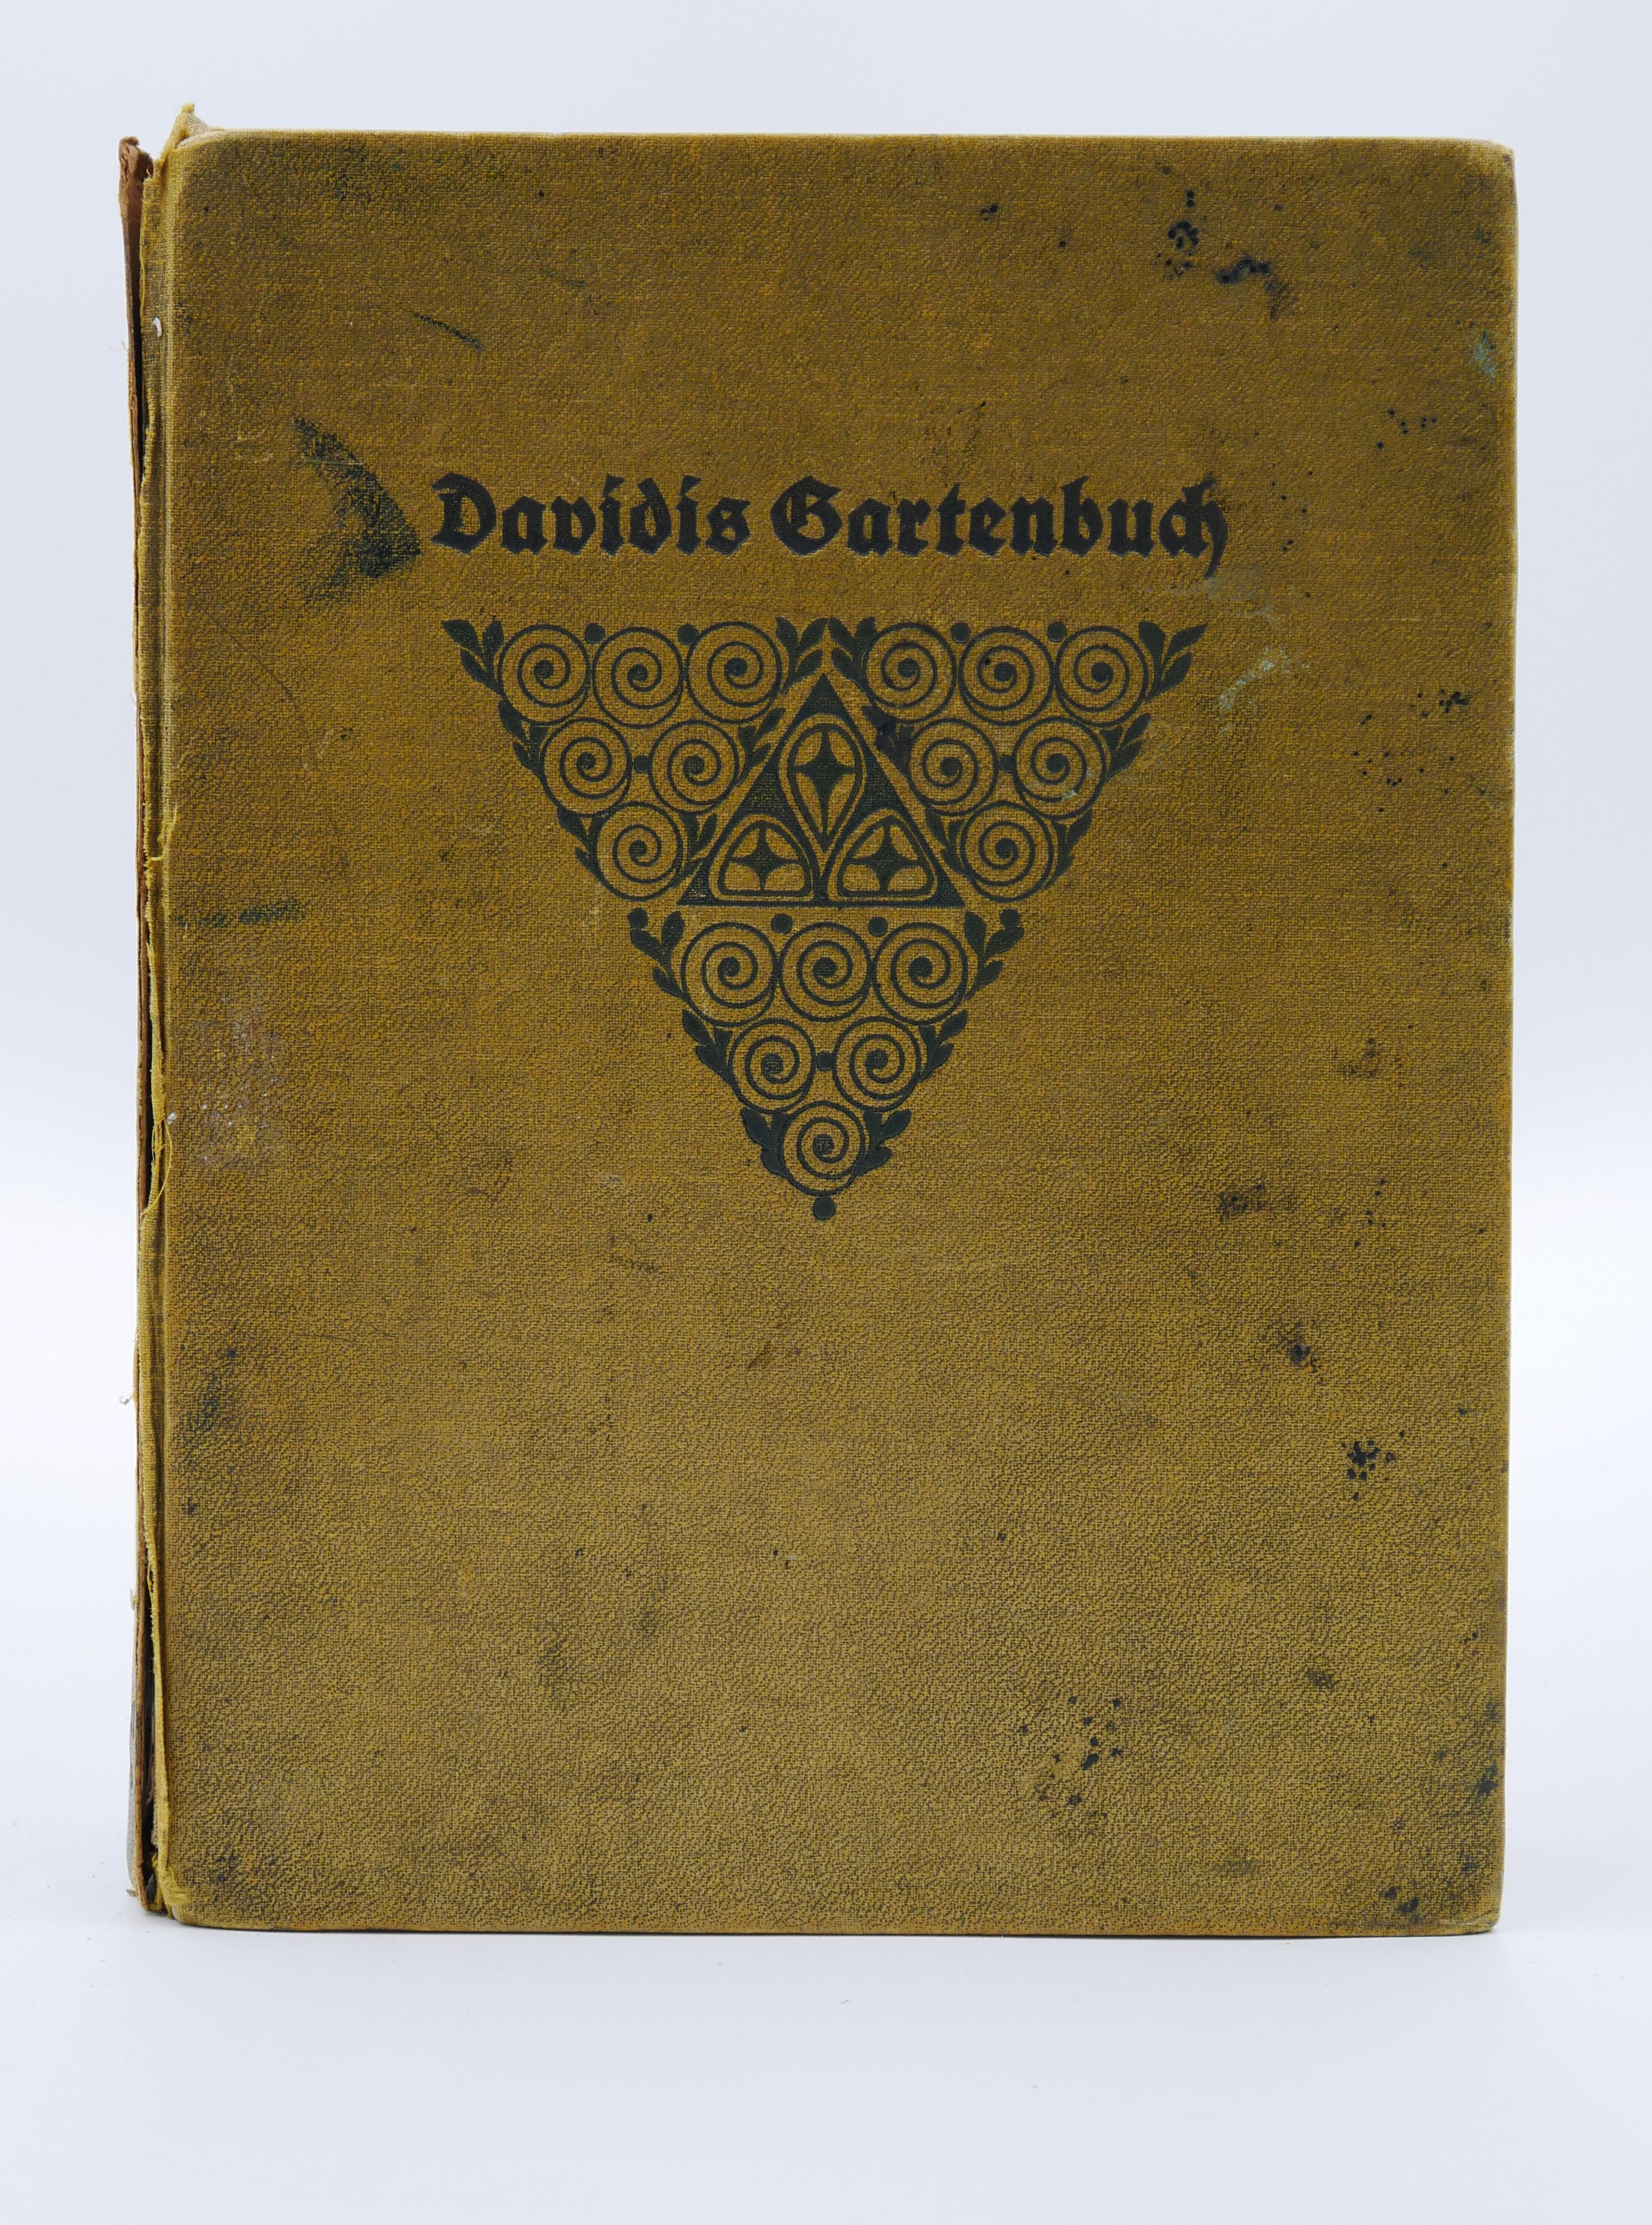 Gartenbuch: Henriette Davidis, Heinrich Schaefer: "Großes Gartenbuch" (1913) (Deutsches Kochbuchmuseum CC BY-NC-SA)